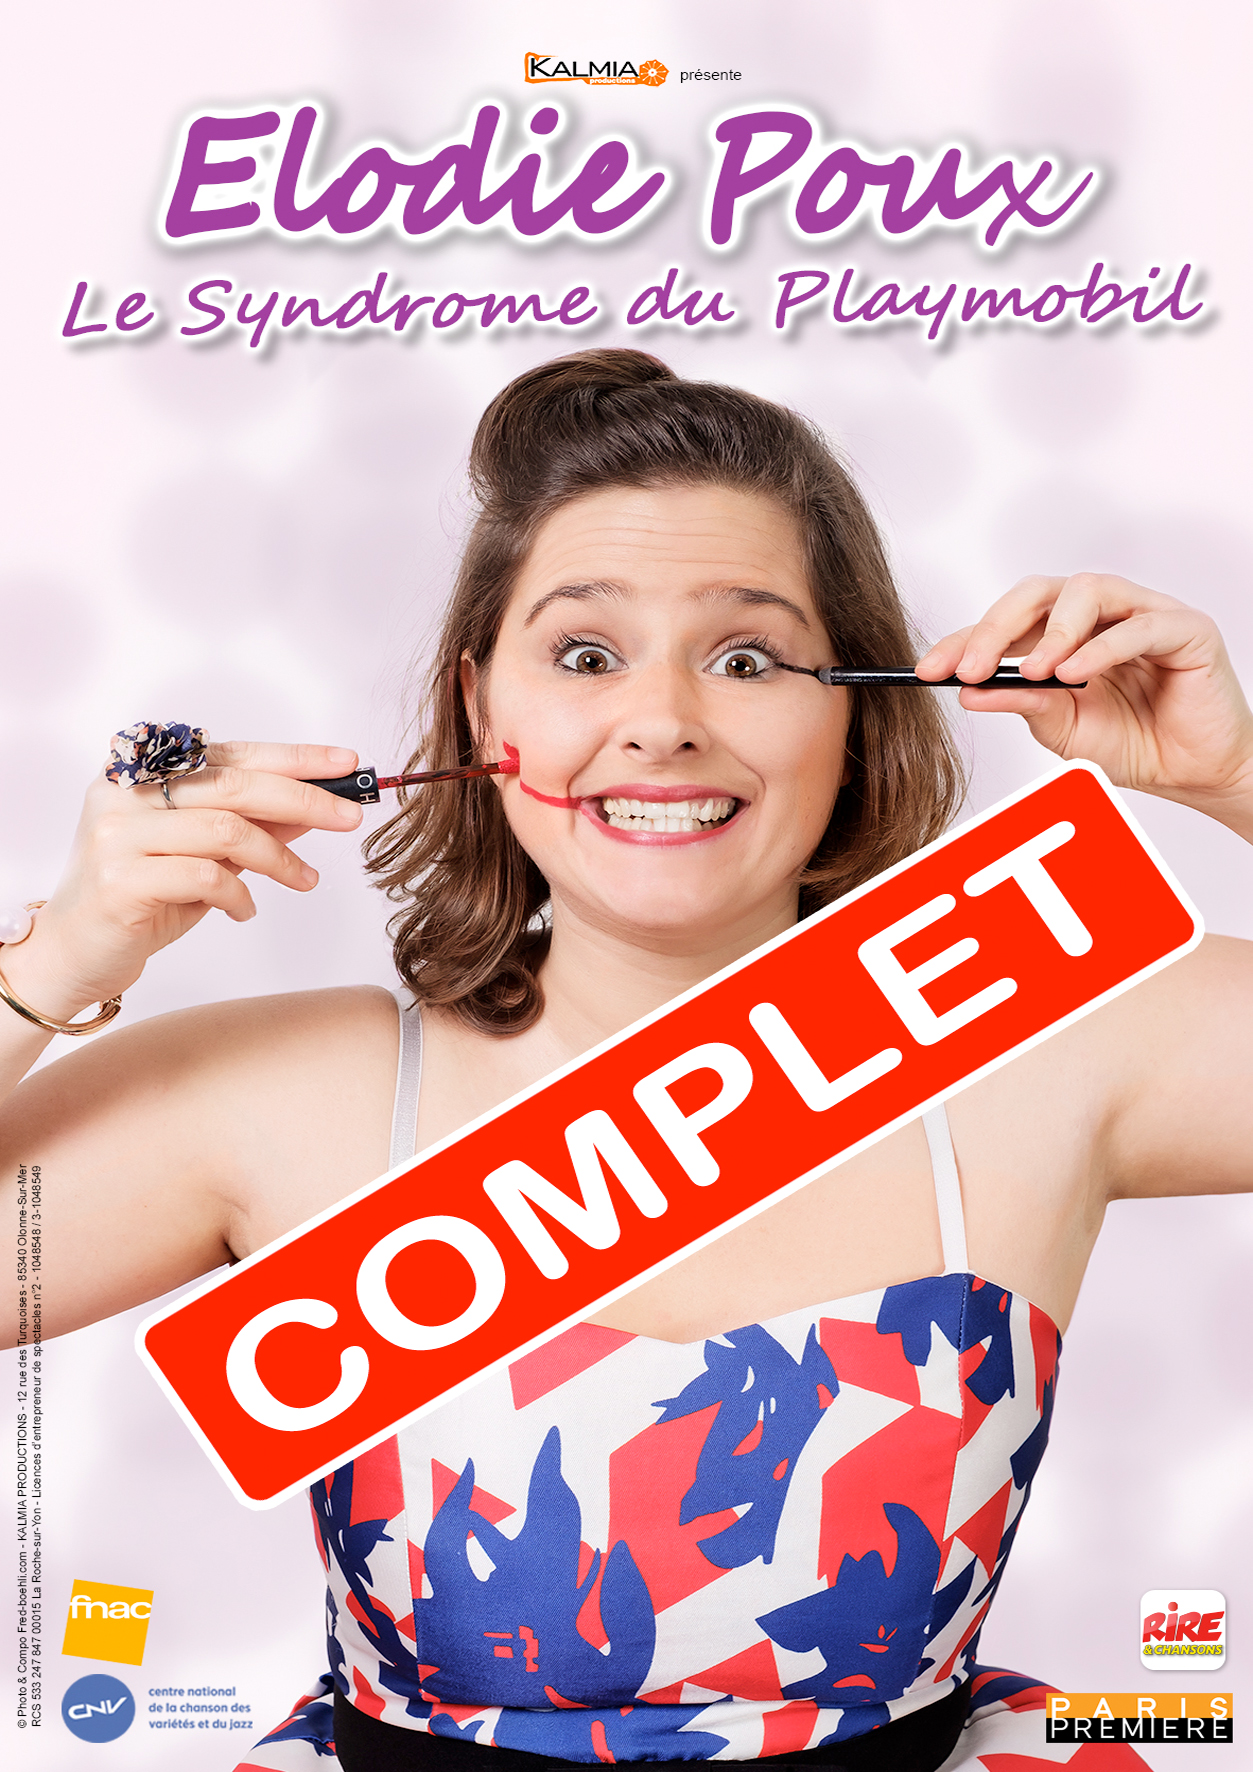 Élodie Poux “Le Syndrome du Playmobil”